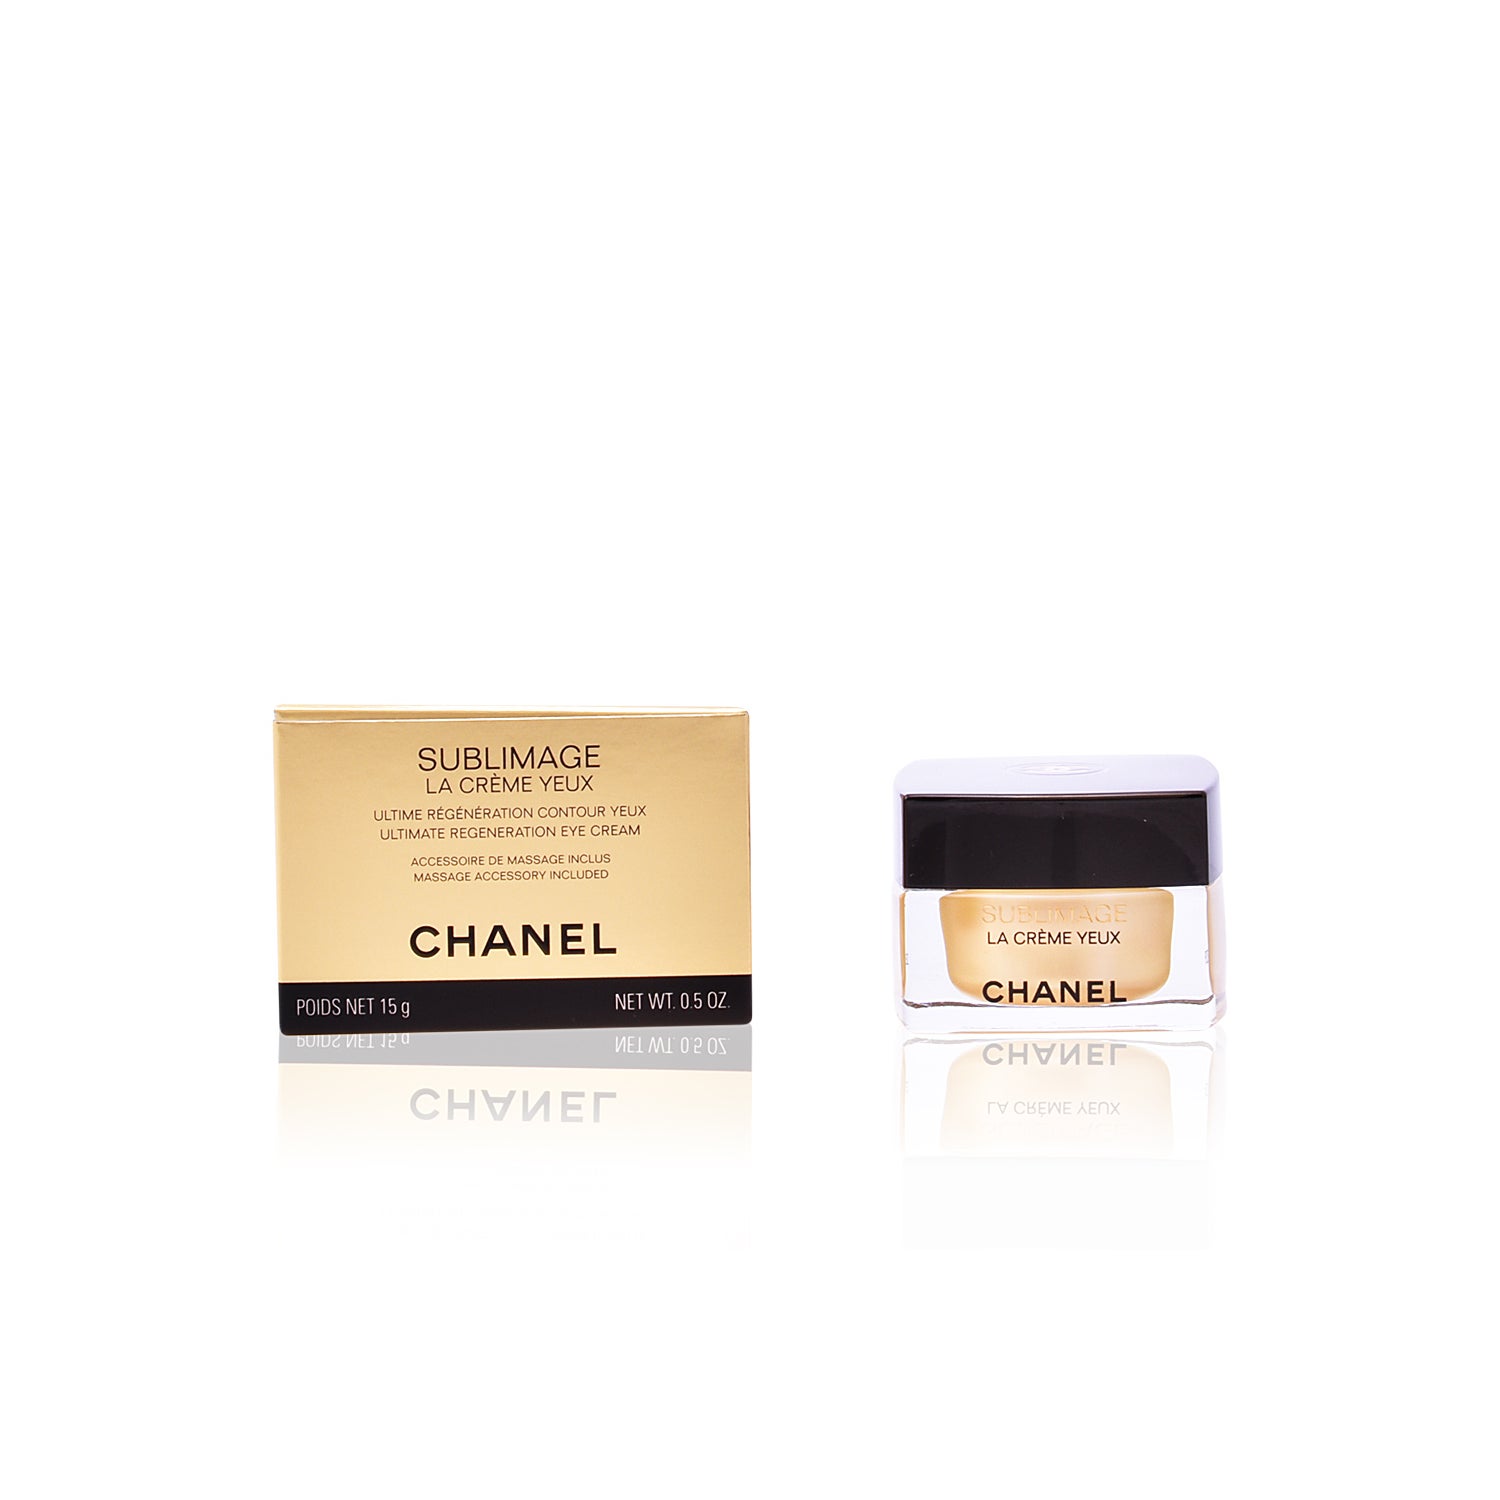 CHANEL, Makeup, Chanel Sublimage Le Correcteur Yeux